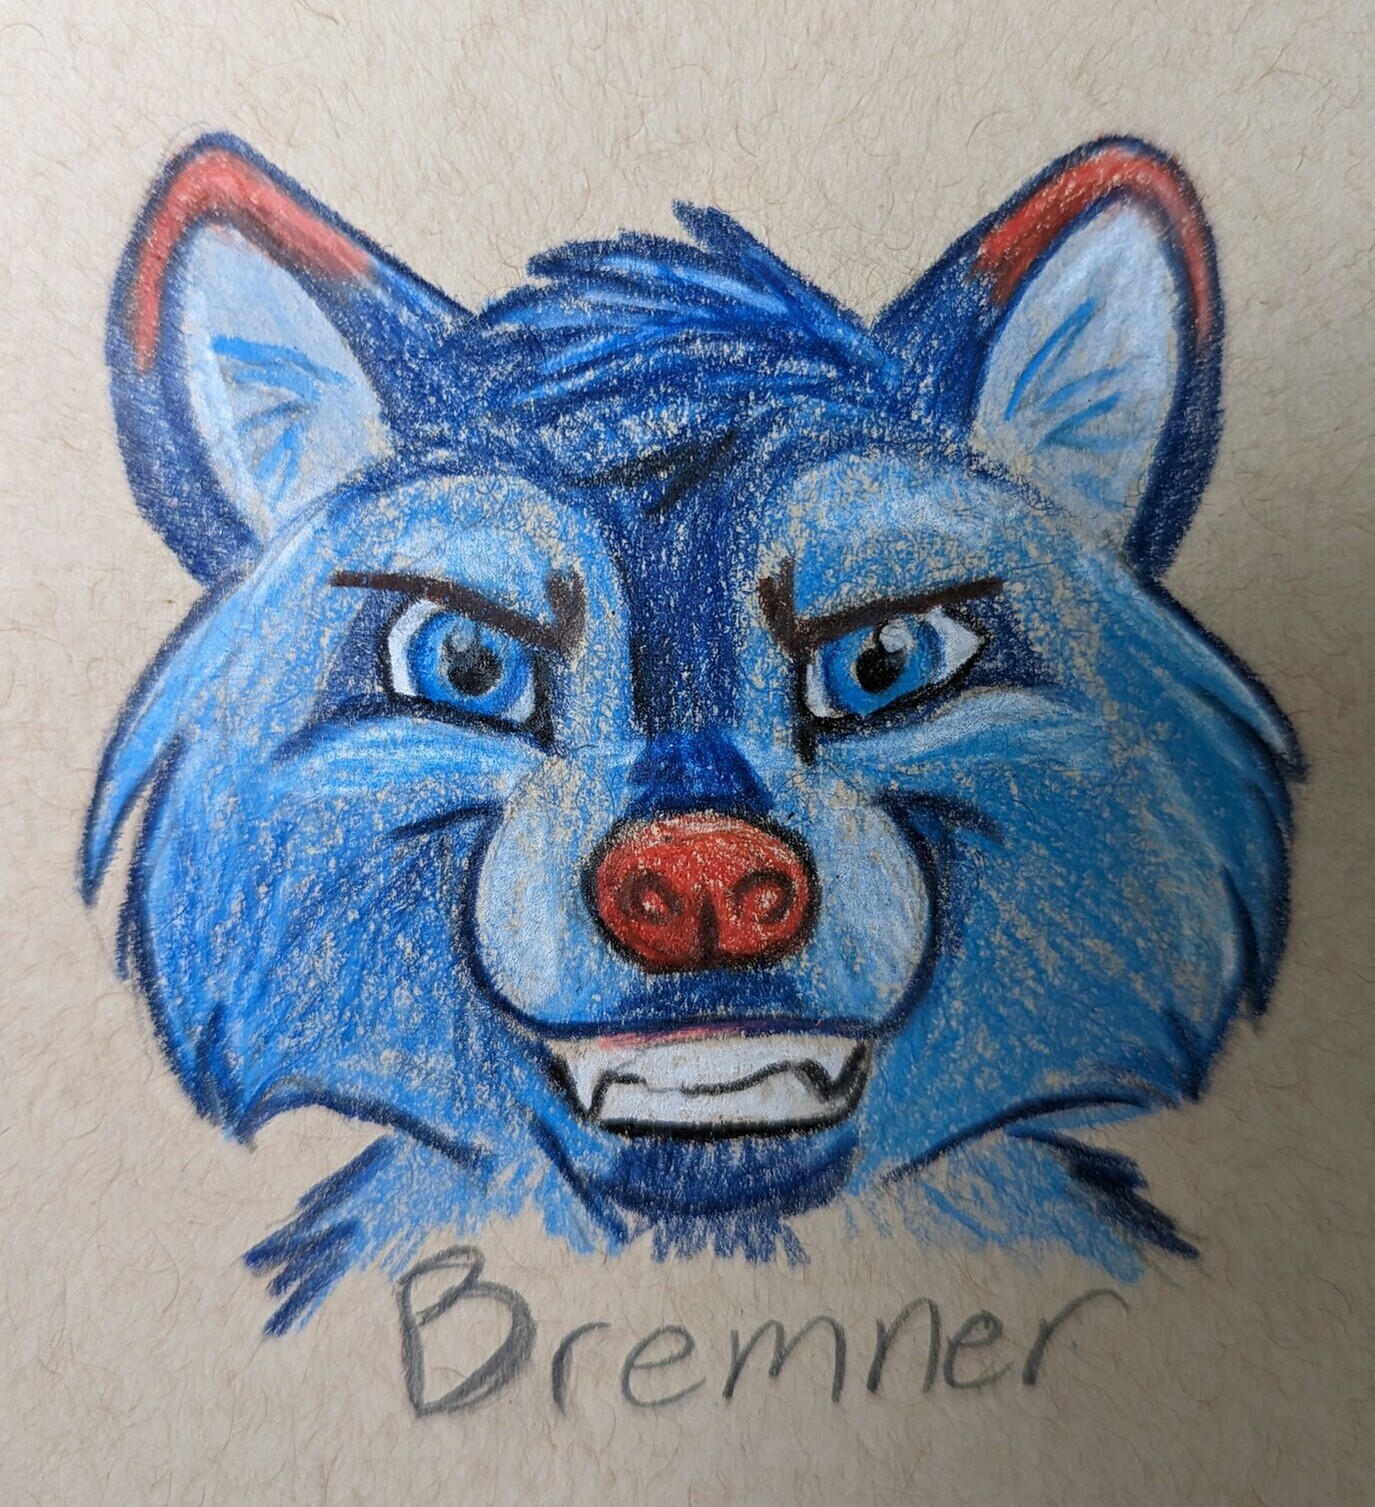 Bremner sketch by Sarakazi